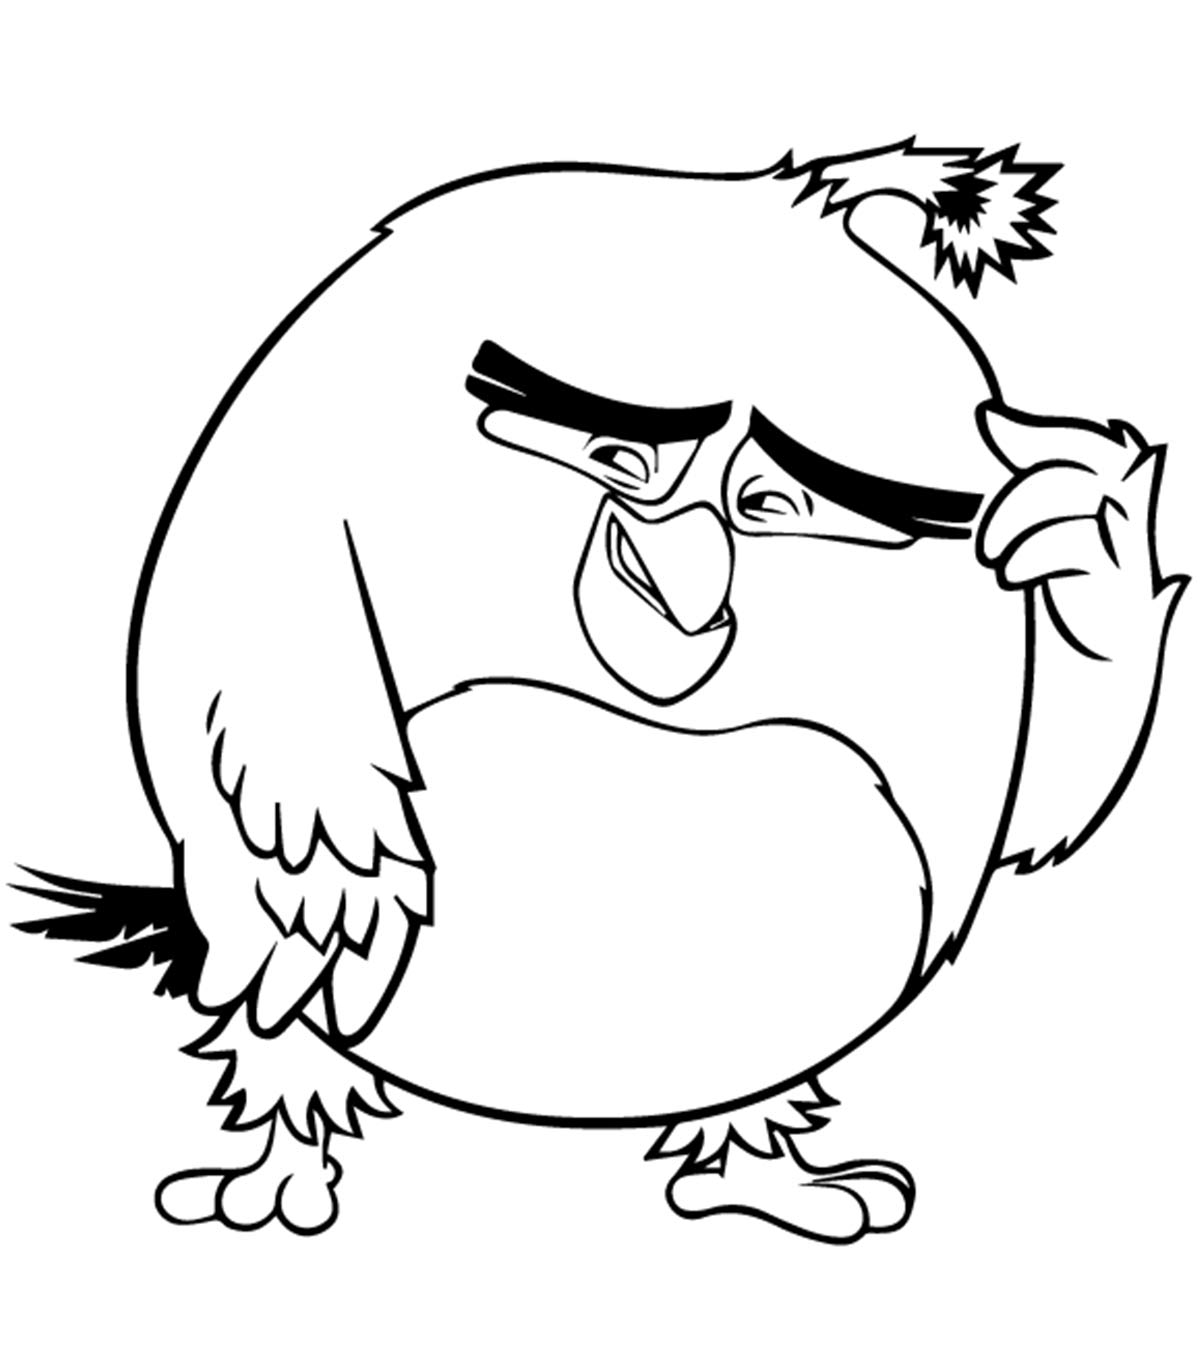 Tranh tô màu chim tức giận Angry bird